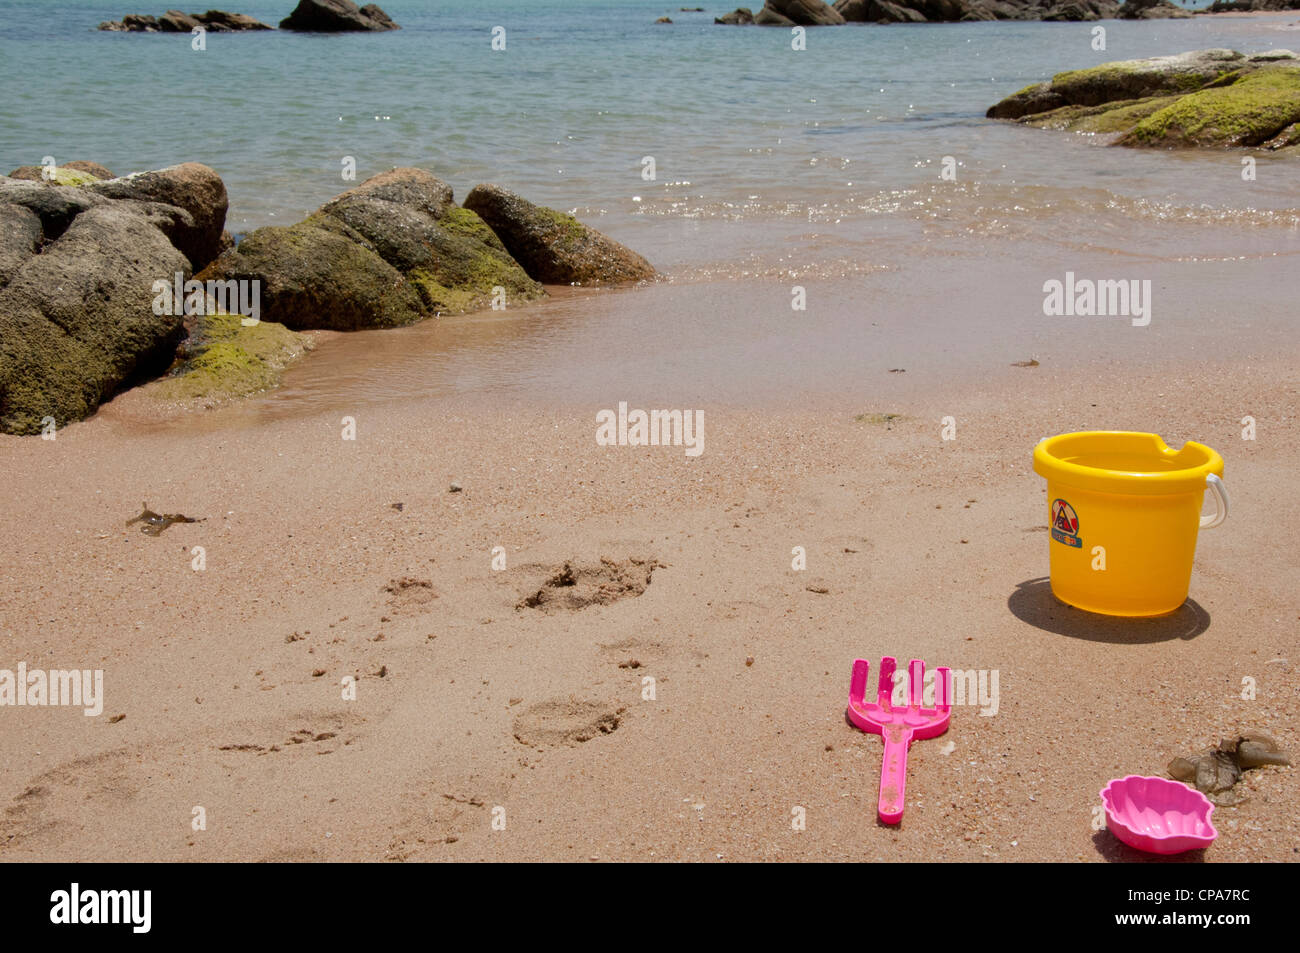 Thailandia, isola di Ko Samui (aka Koh samui), la spiaggia di Chaweng. La spiaggia dei bambini giocattoli. Foto Stock